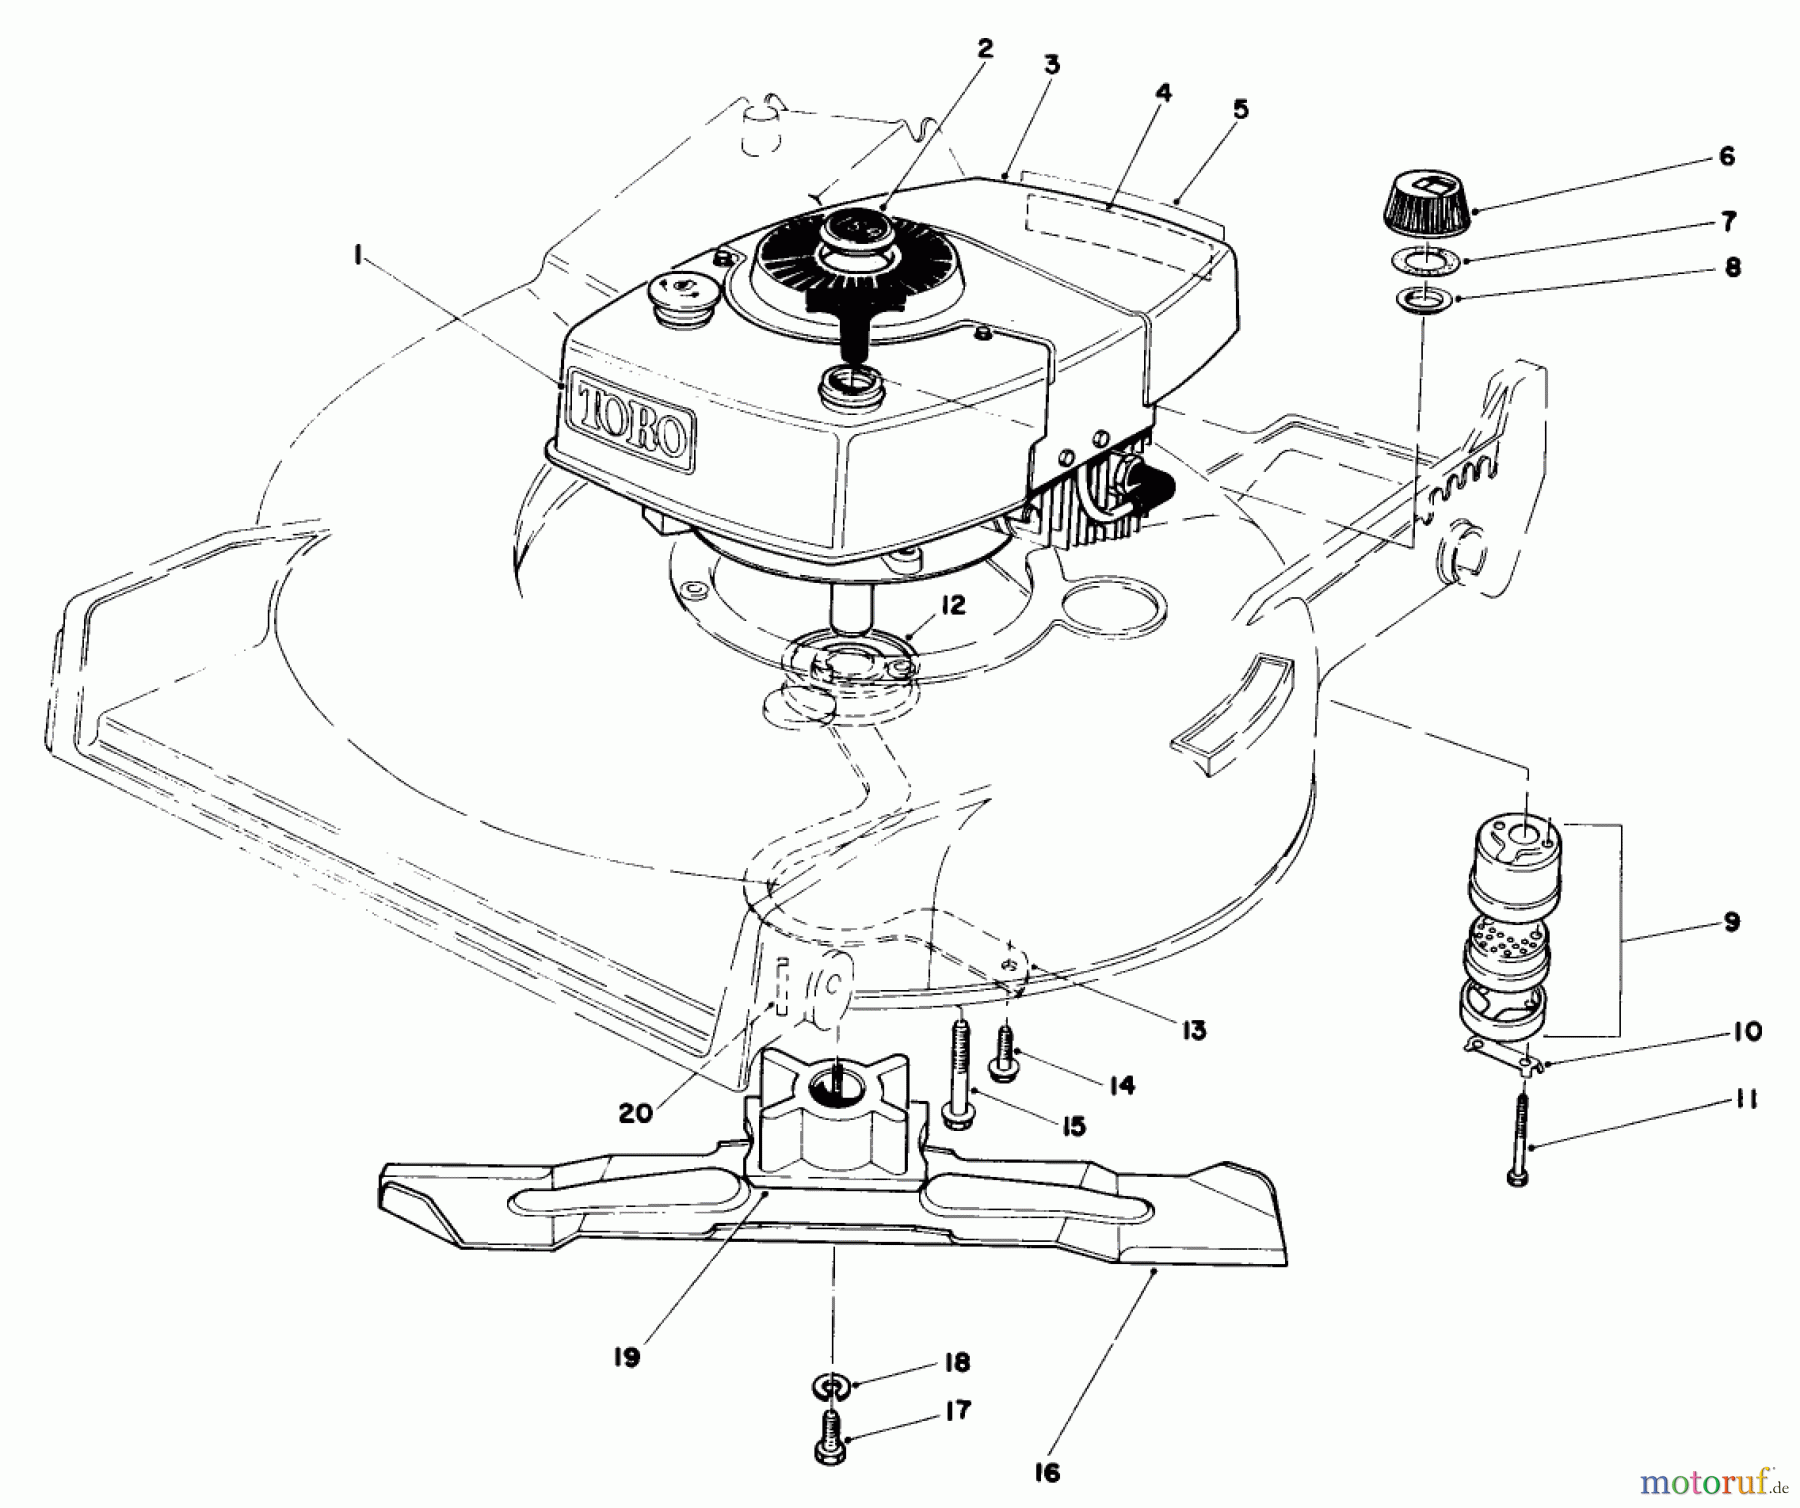  Toro Neu Mowers, Walk-Behind Seite 1 20810C - Toro Lawnmower, 1985 (5000001-5999999) ENGINE ASSEMBLY